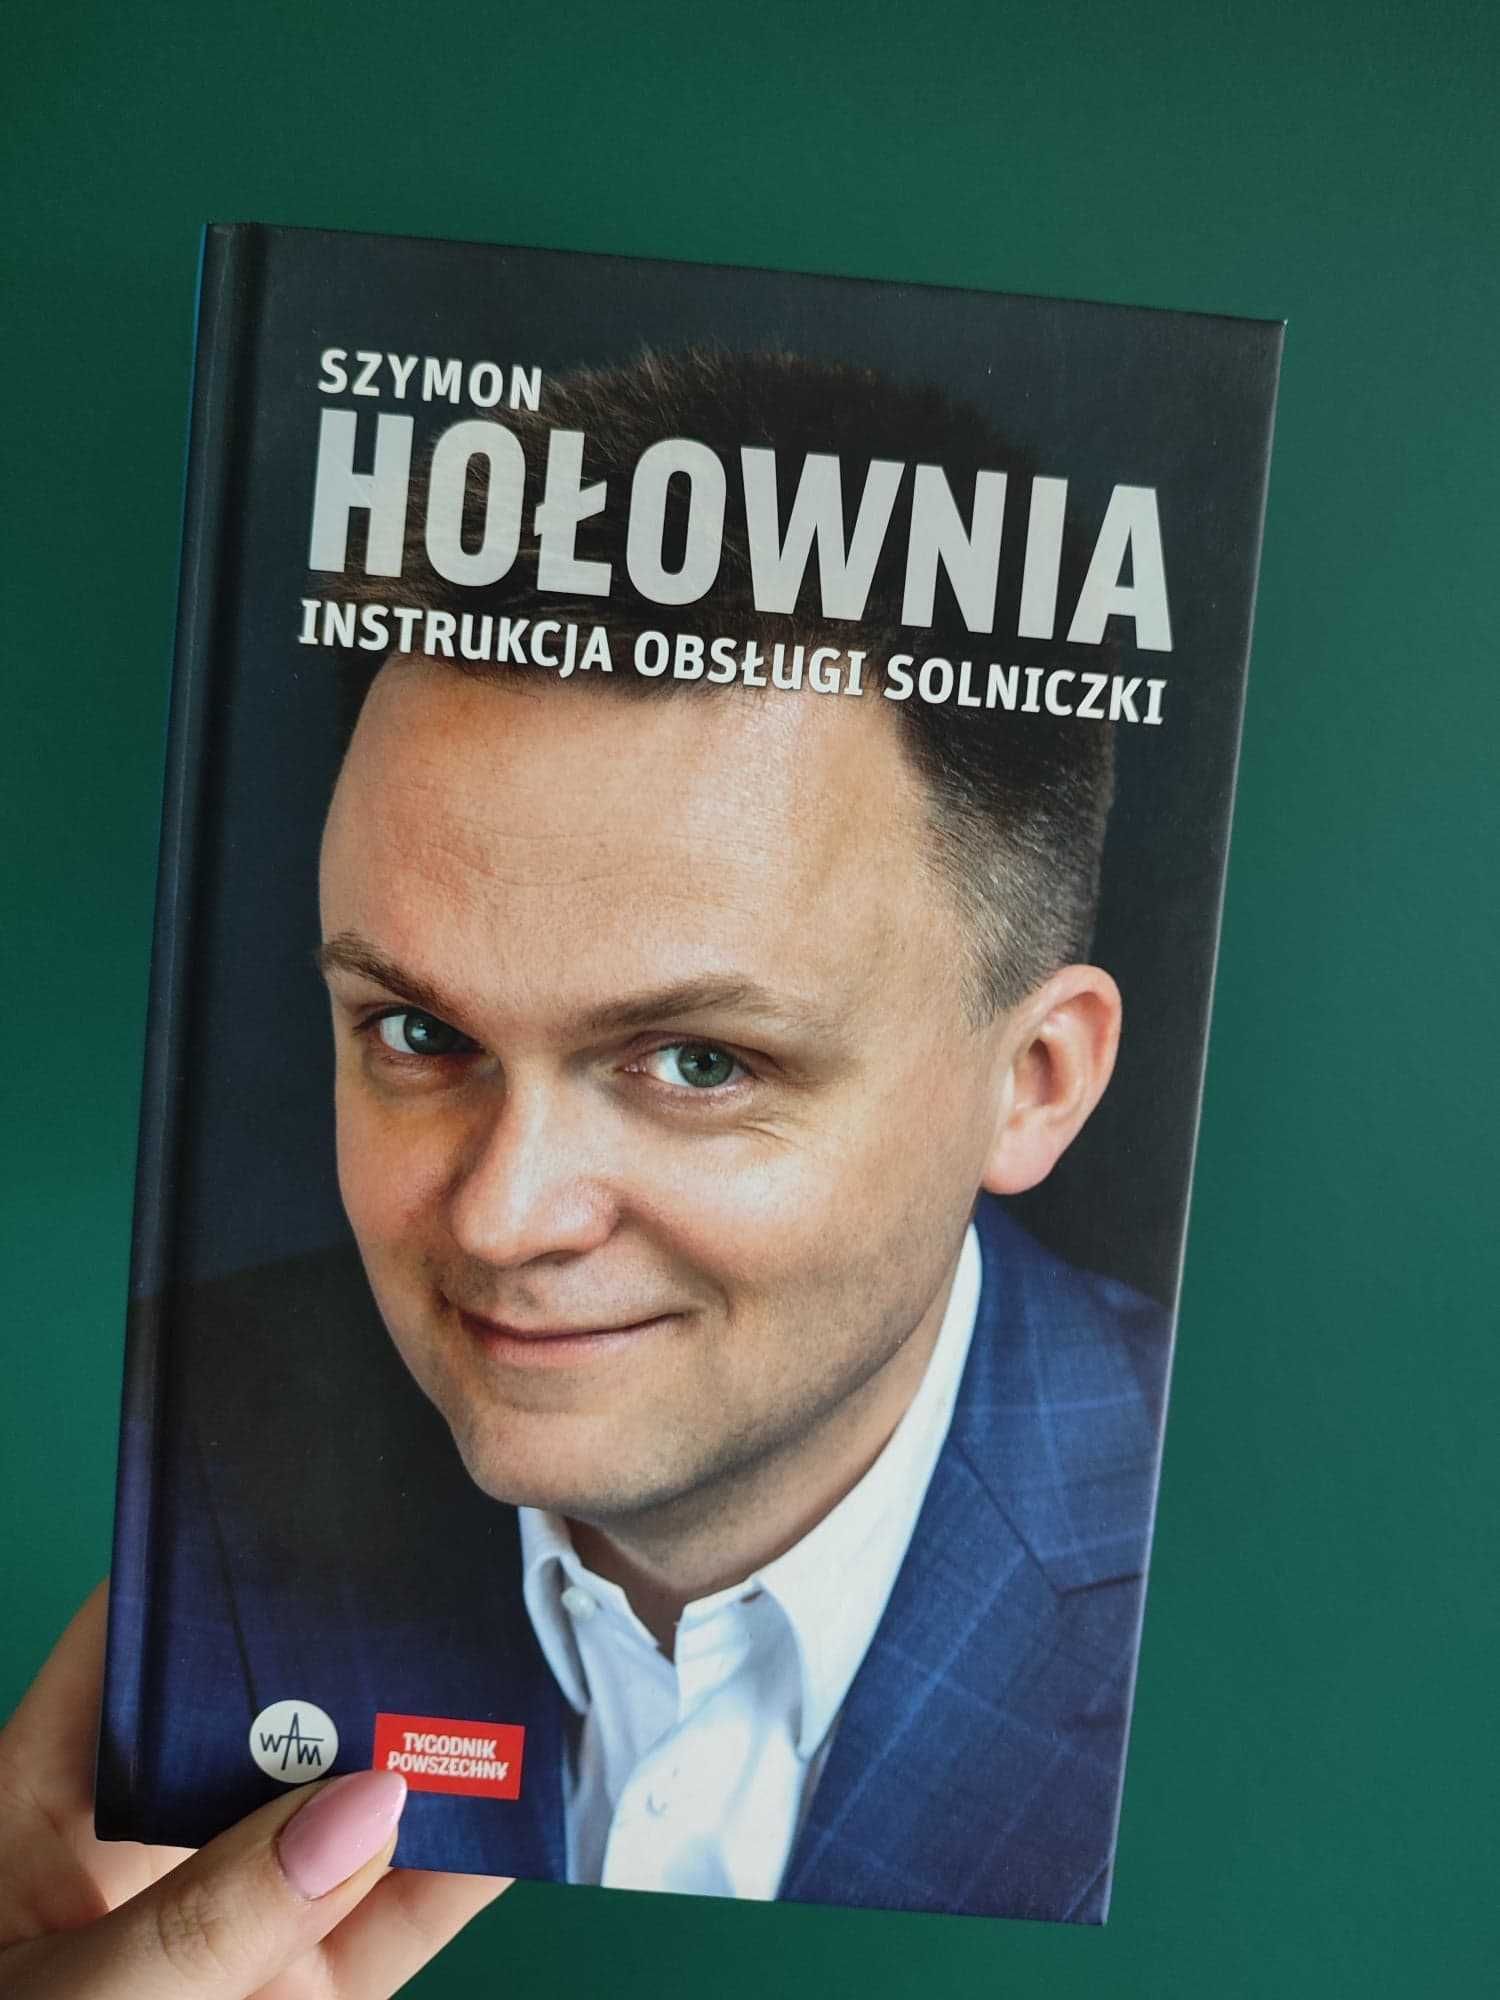 książka " INSTRUKCJA OBSŁUGI SOLNICZKI " Szymon Hołownia